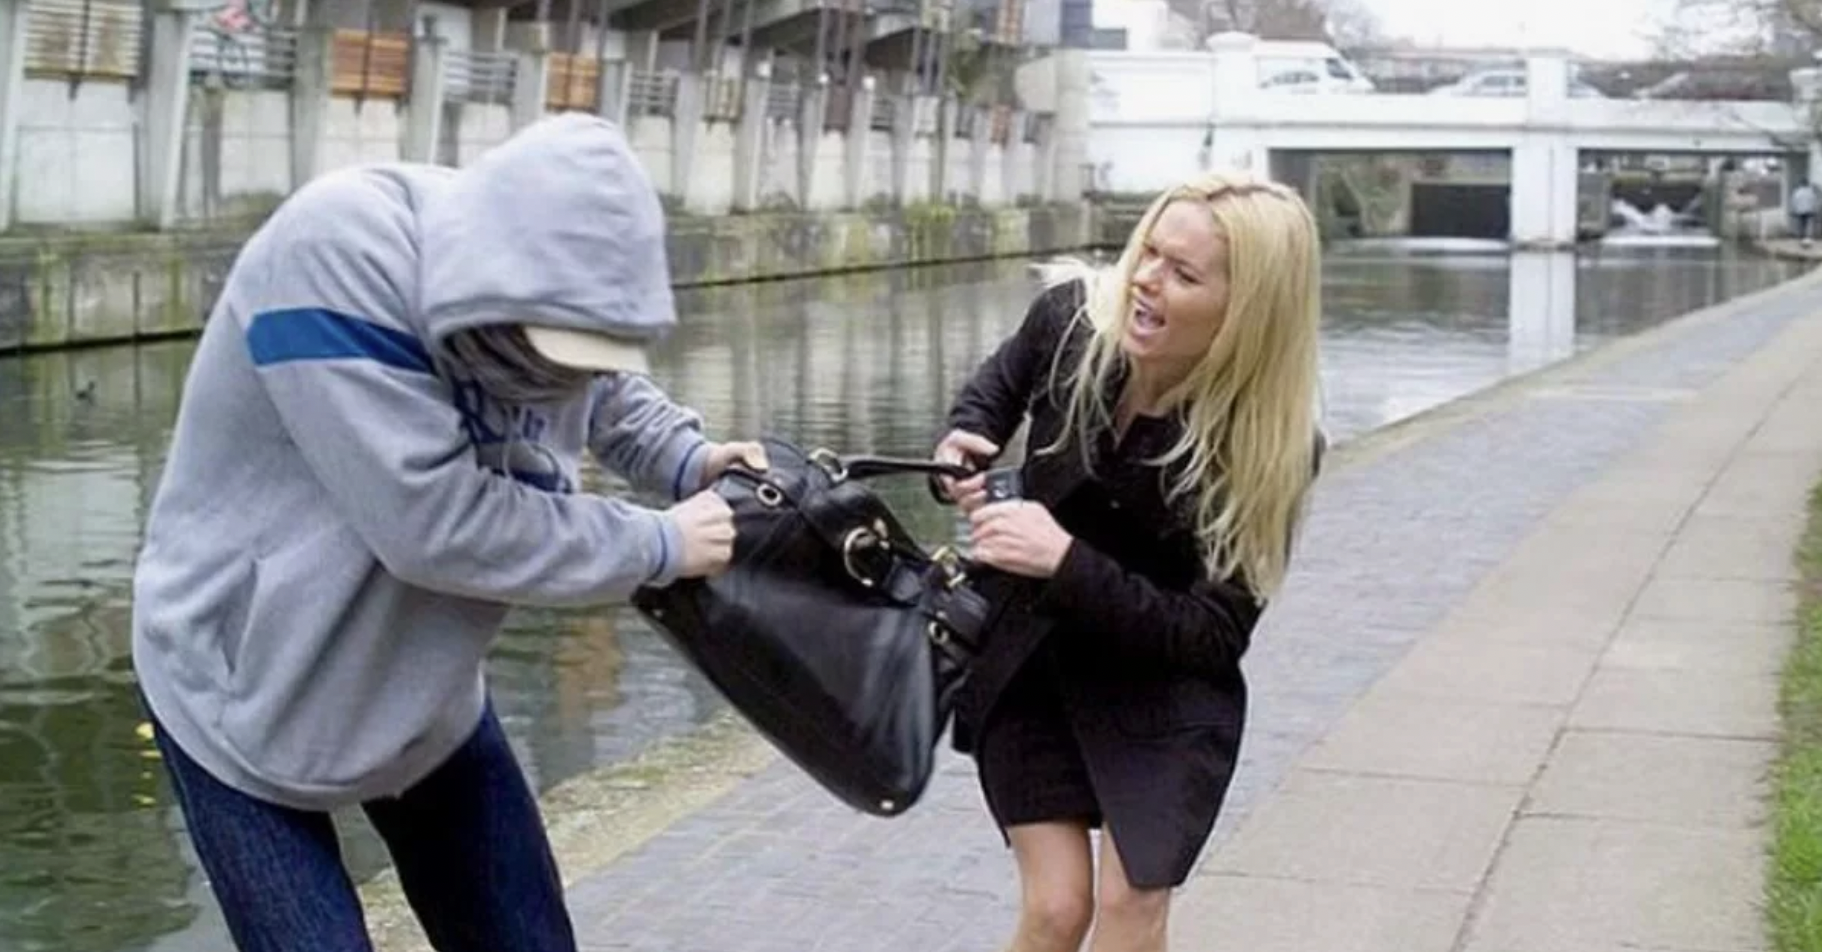 Un voleur de rue essayant de voler le sac à main d'une femme | Source : Shutterstock